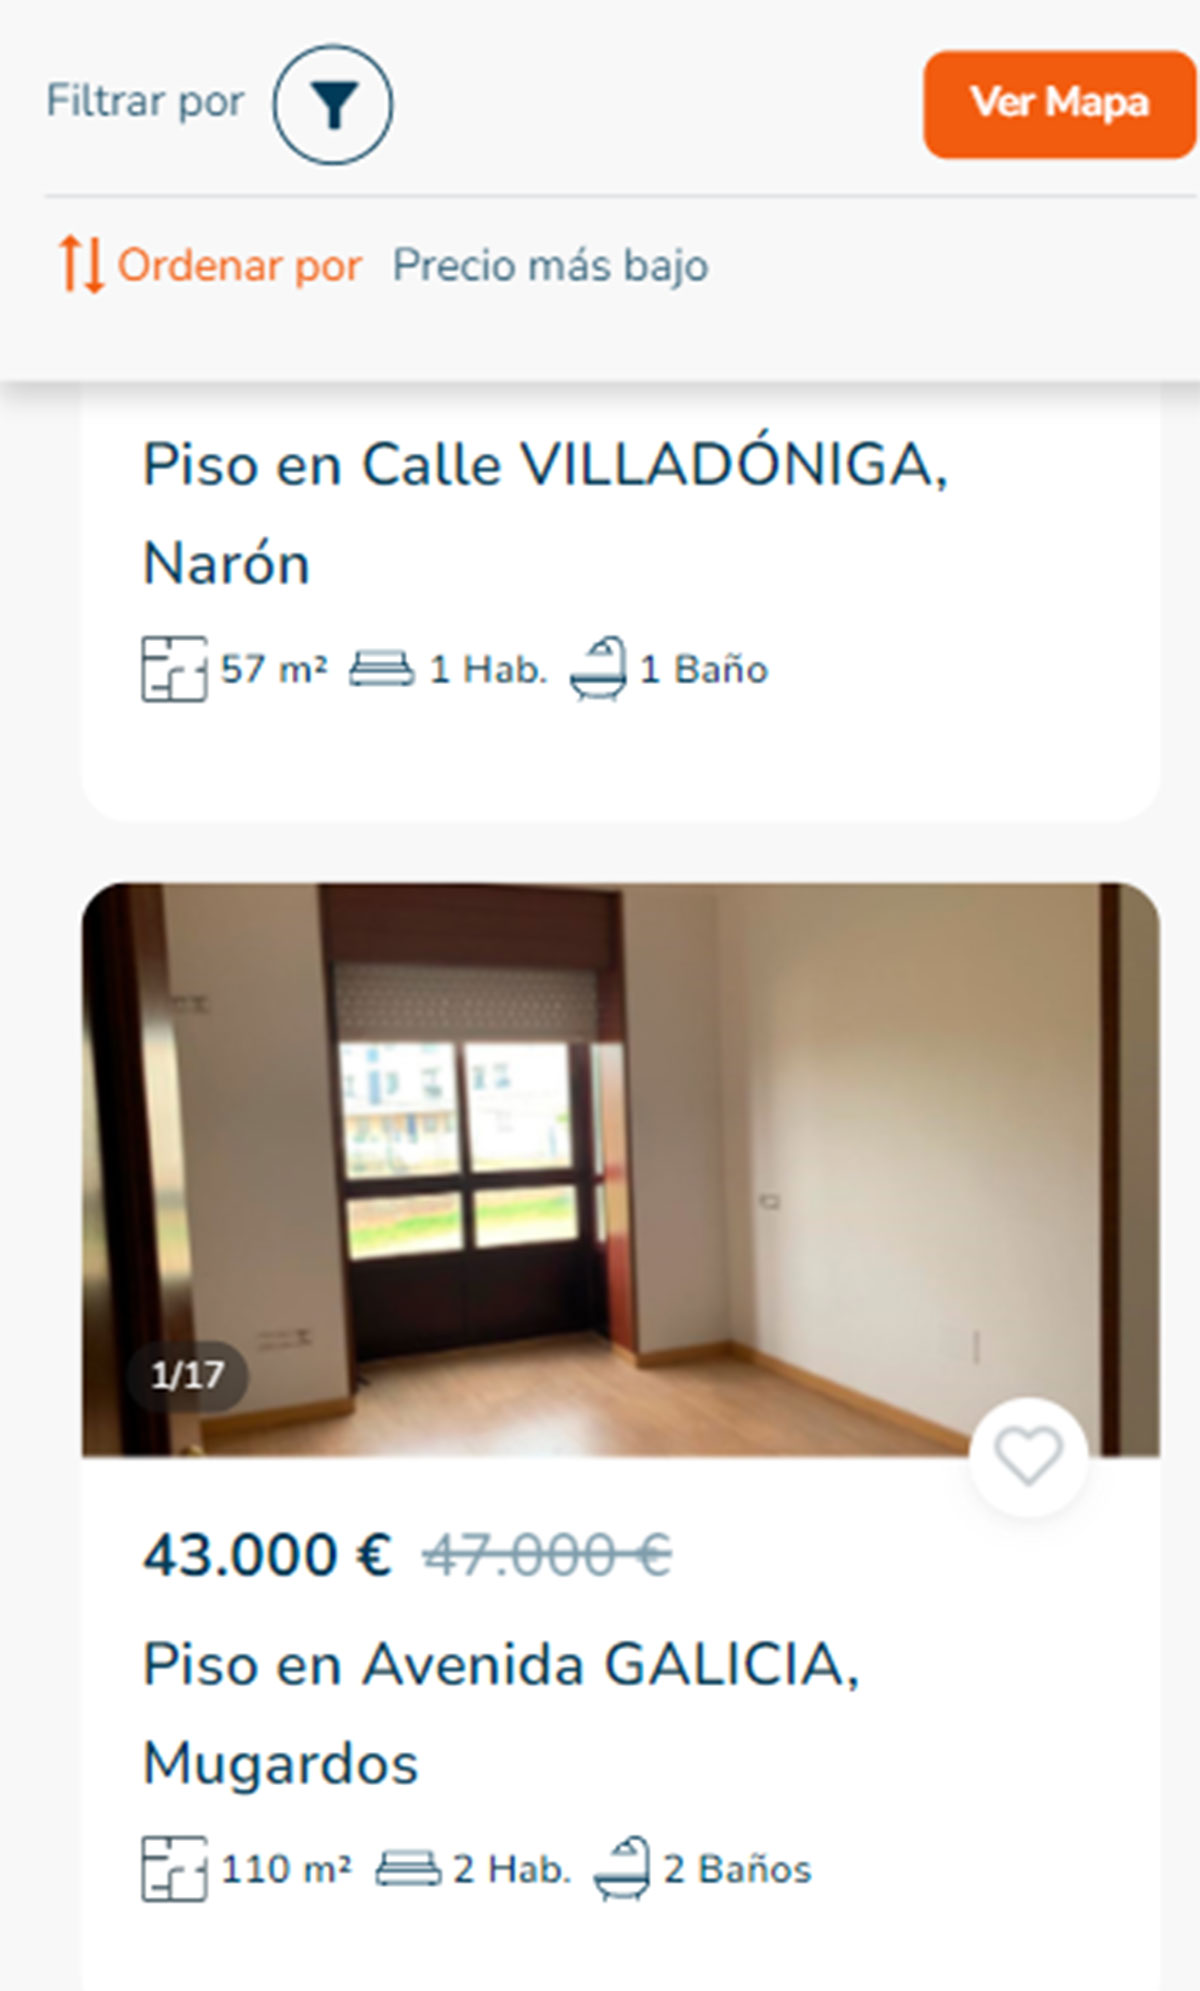 Piso a la venta en A Coruña por 43.000 euros